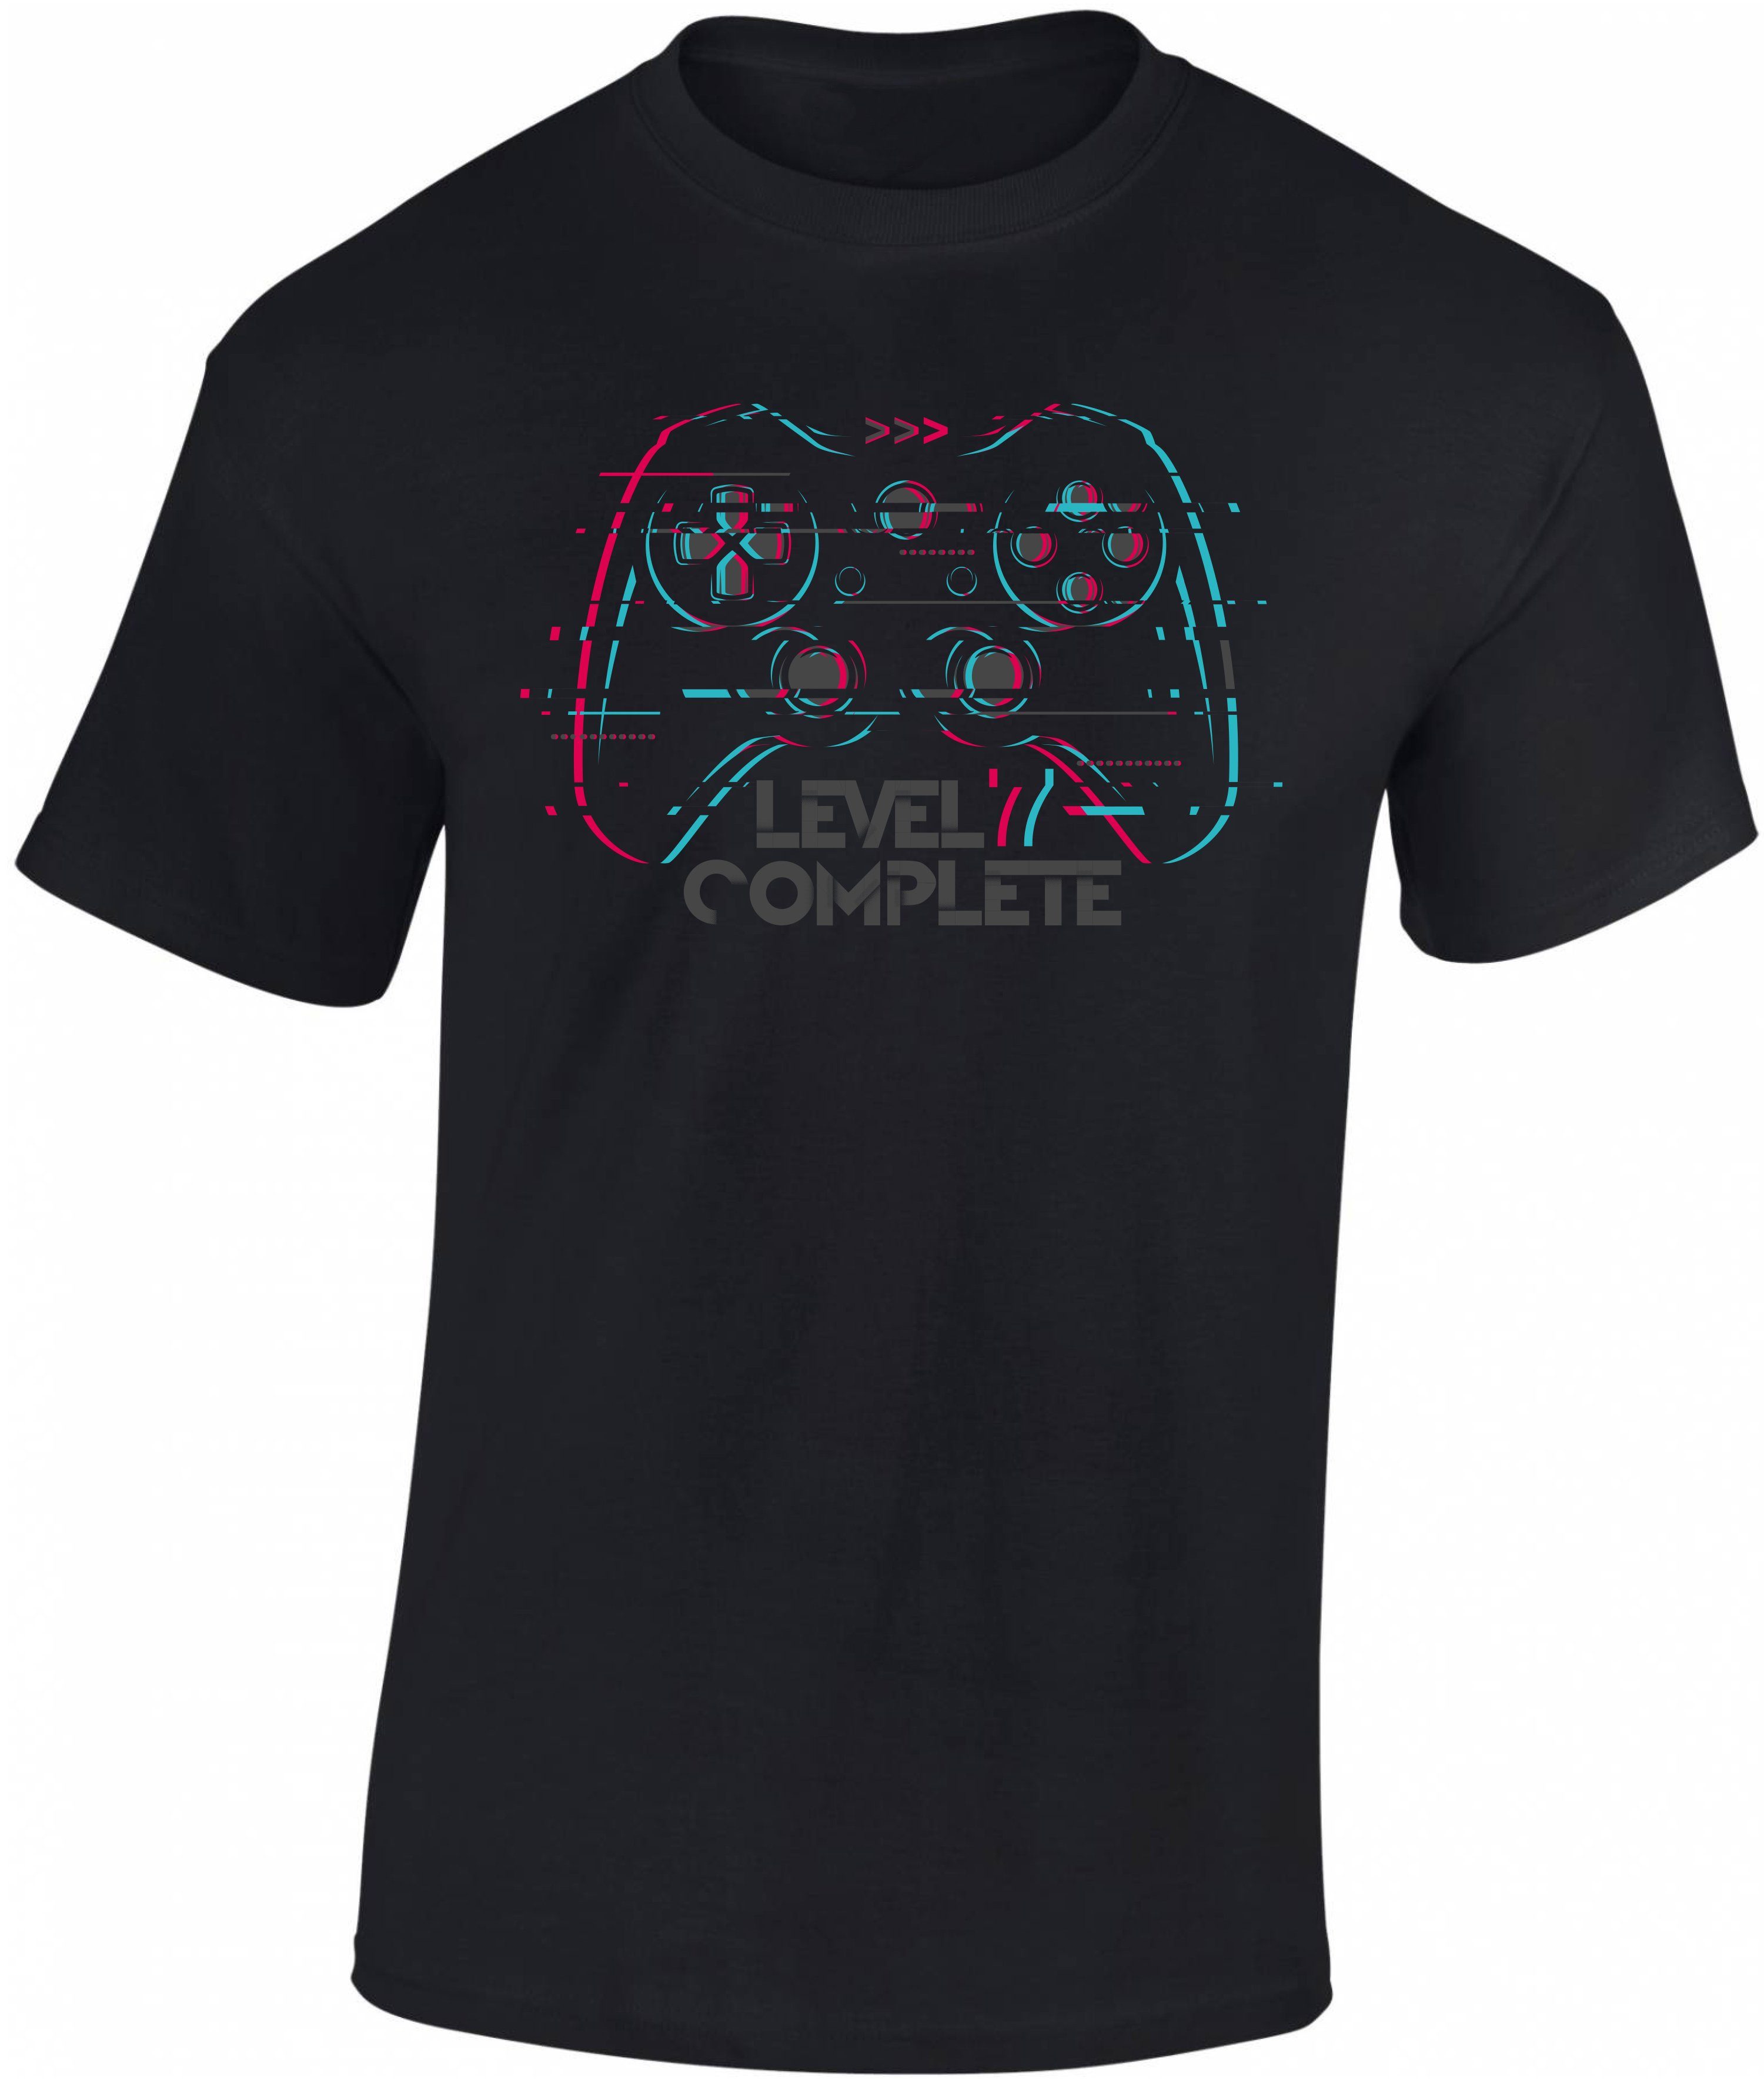 Complete zum Print-Shirt hochwertiger aus T-Shirt Level Baumwolle Gamer Siebdruck, : Jungen Baddery 7 Geburtstag 7.